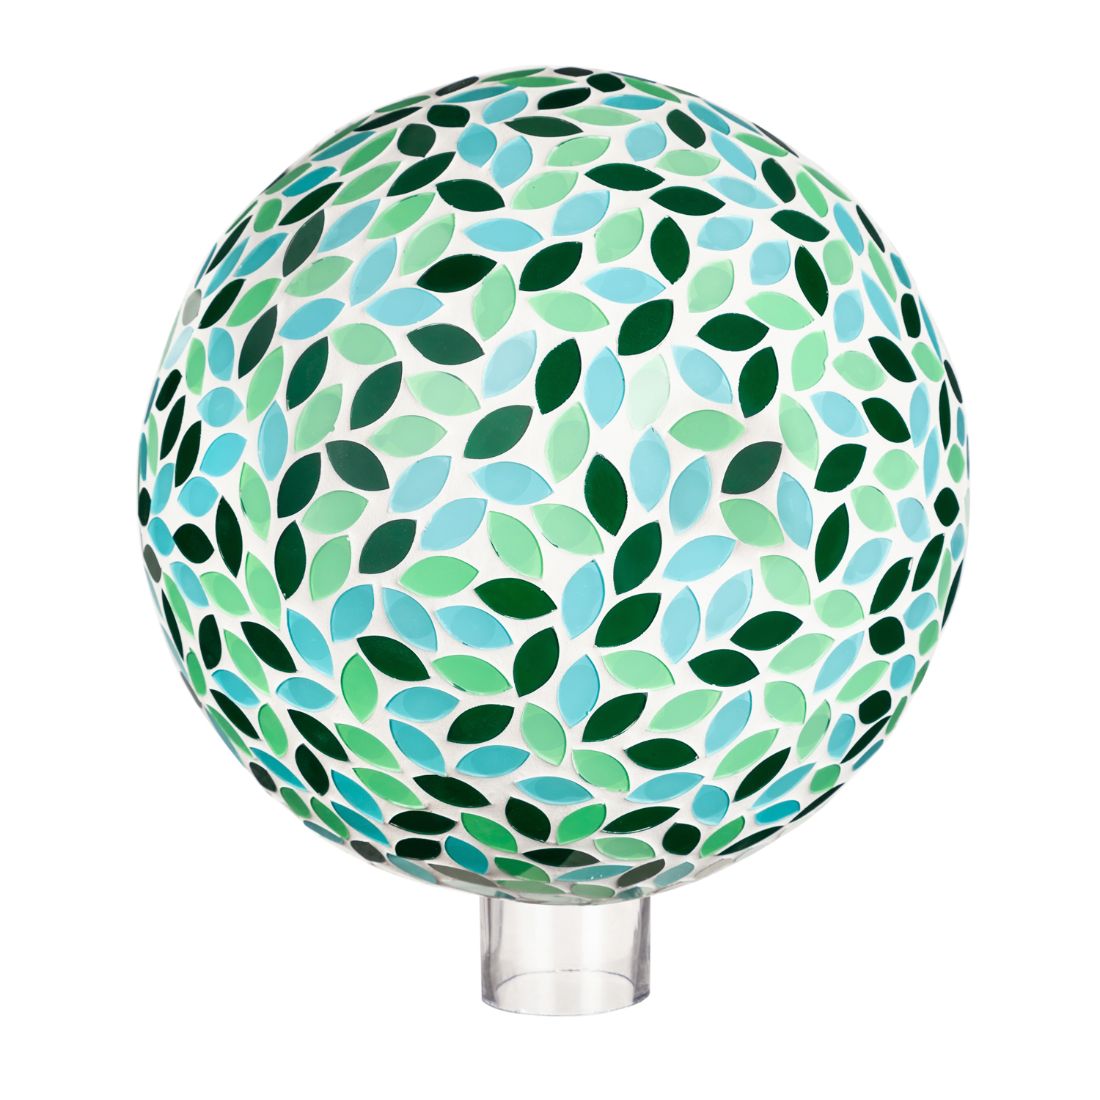 10" Mosaic Glass Gazing Ball, Green Petals